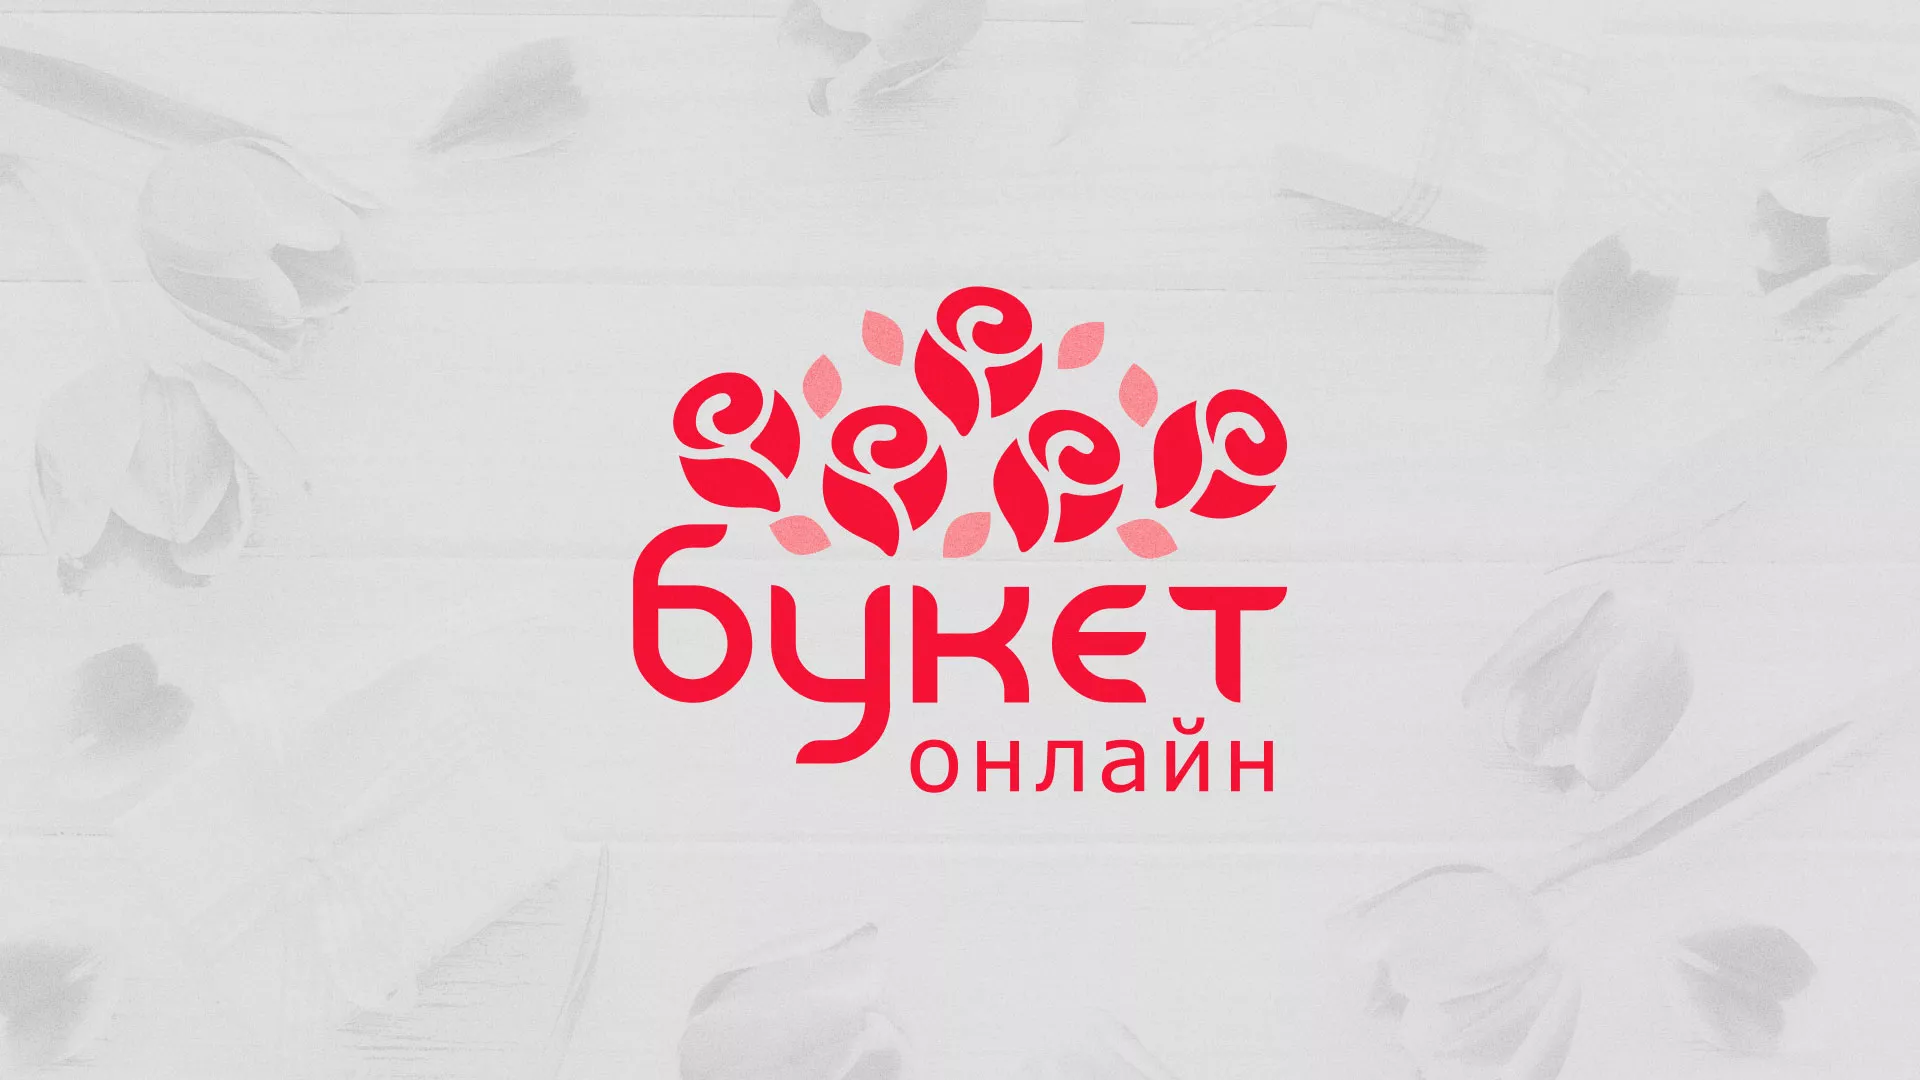 Создание интернет-магазина «Букет-онлайн» по цветам в Дзержинске